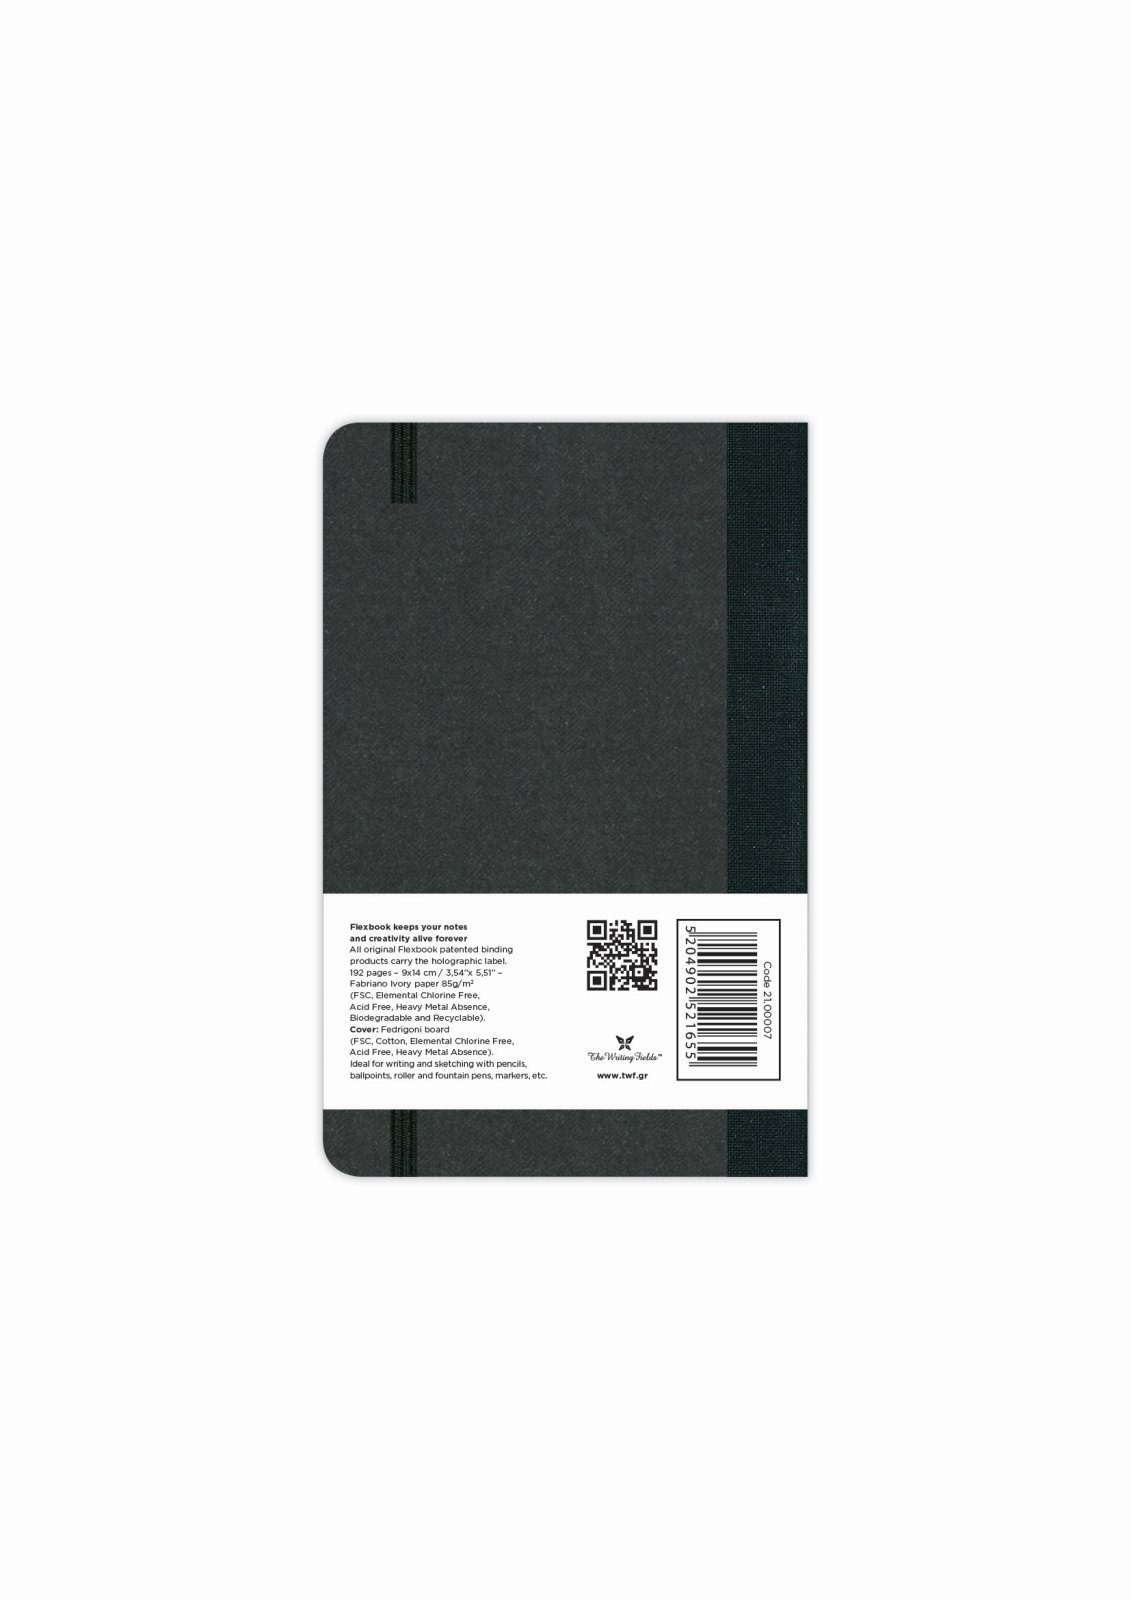 Schwarz Notizbuch verschied Elastikband / 14 Notizbuch Flexbook Seiten Blanko 9 / * cm Globel Flexbook blanko/linierte